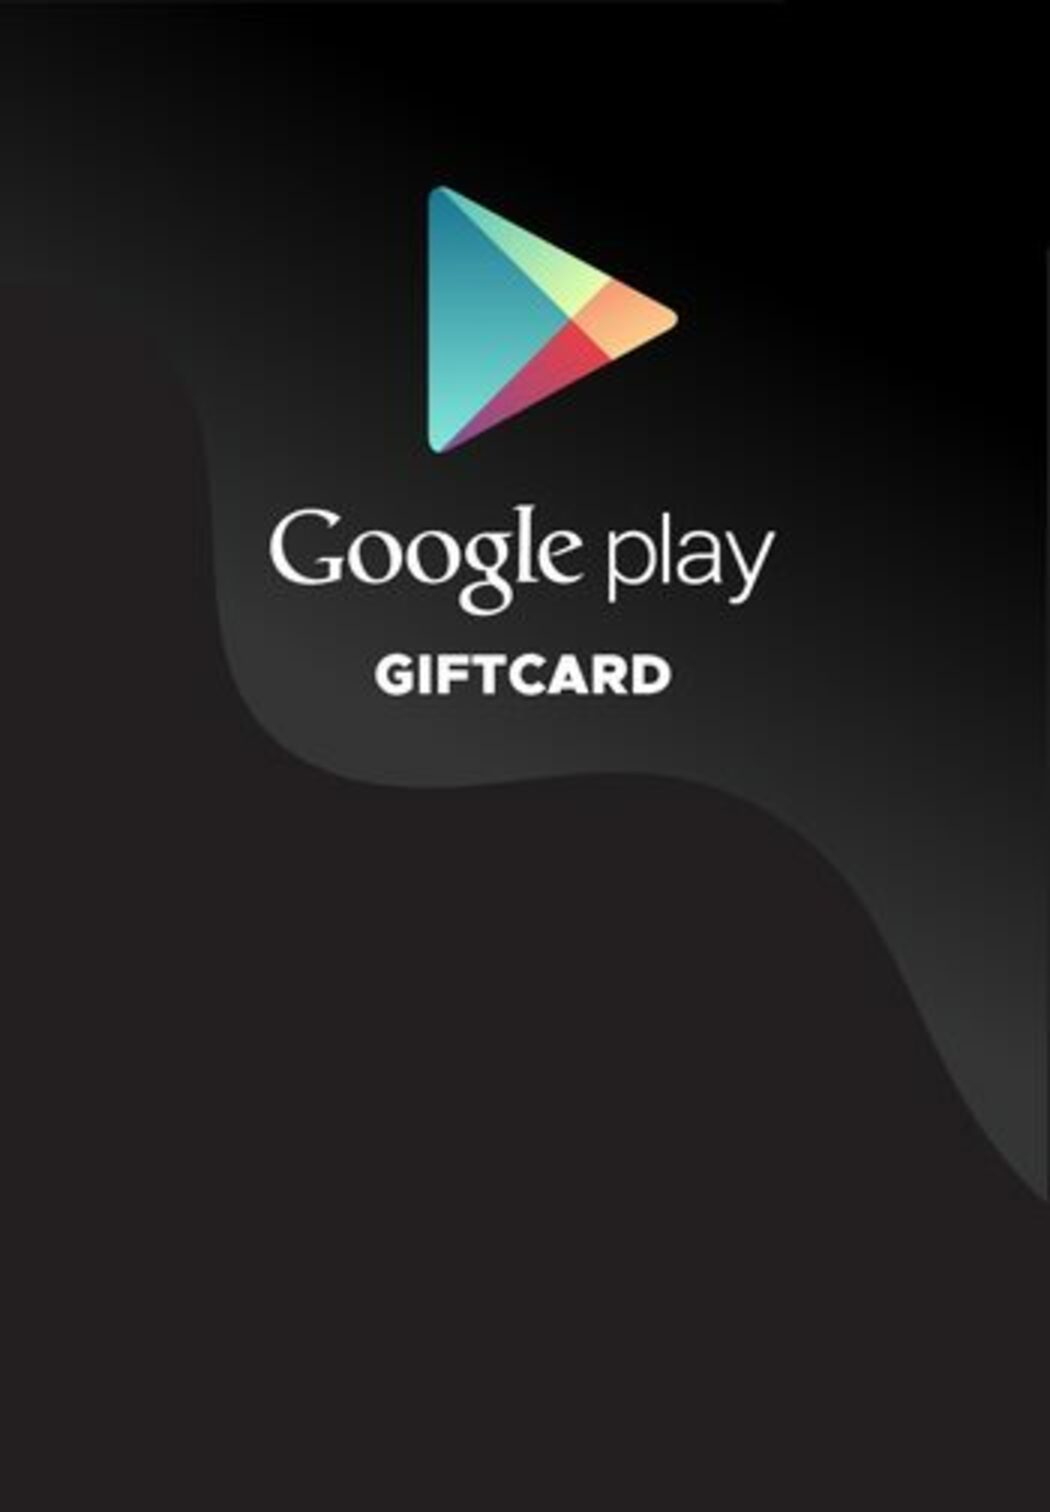 Comprar Gift Card Google Play R$ 15 - Trivia PW